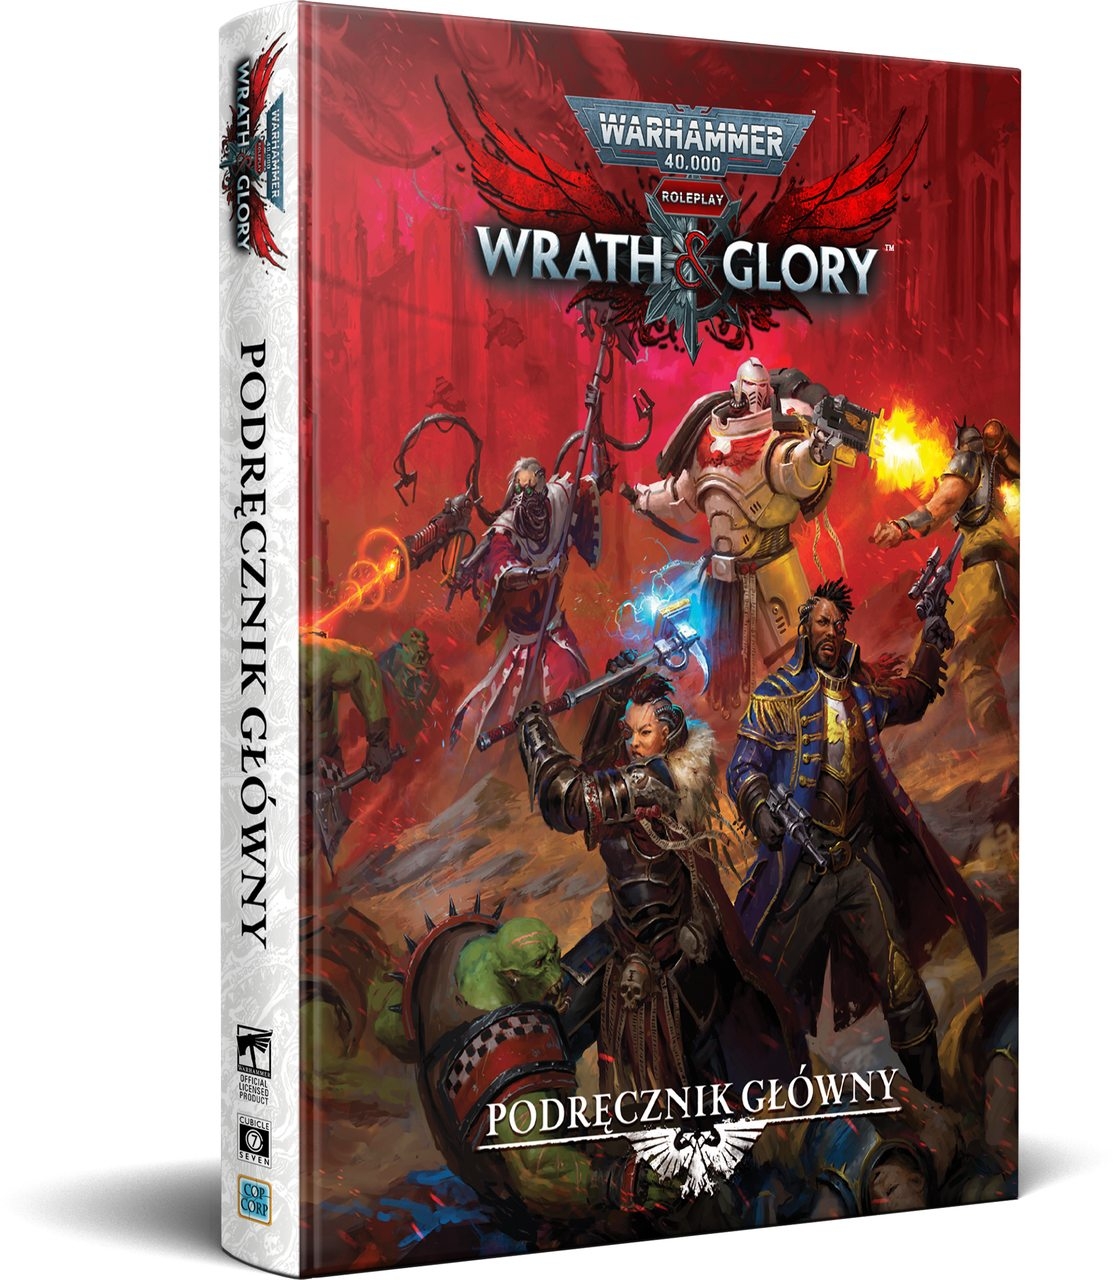 Warhammer 40,000 Roleplay: Wrath & Glory - Podręcznik główny (edycja polska)